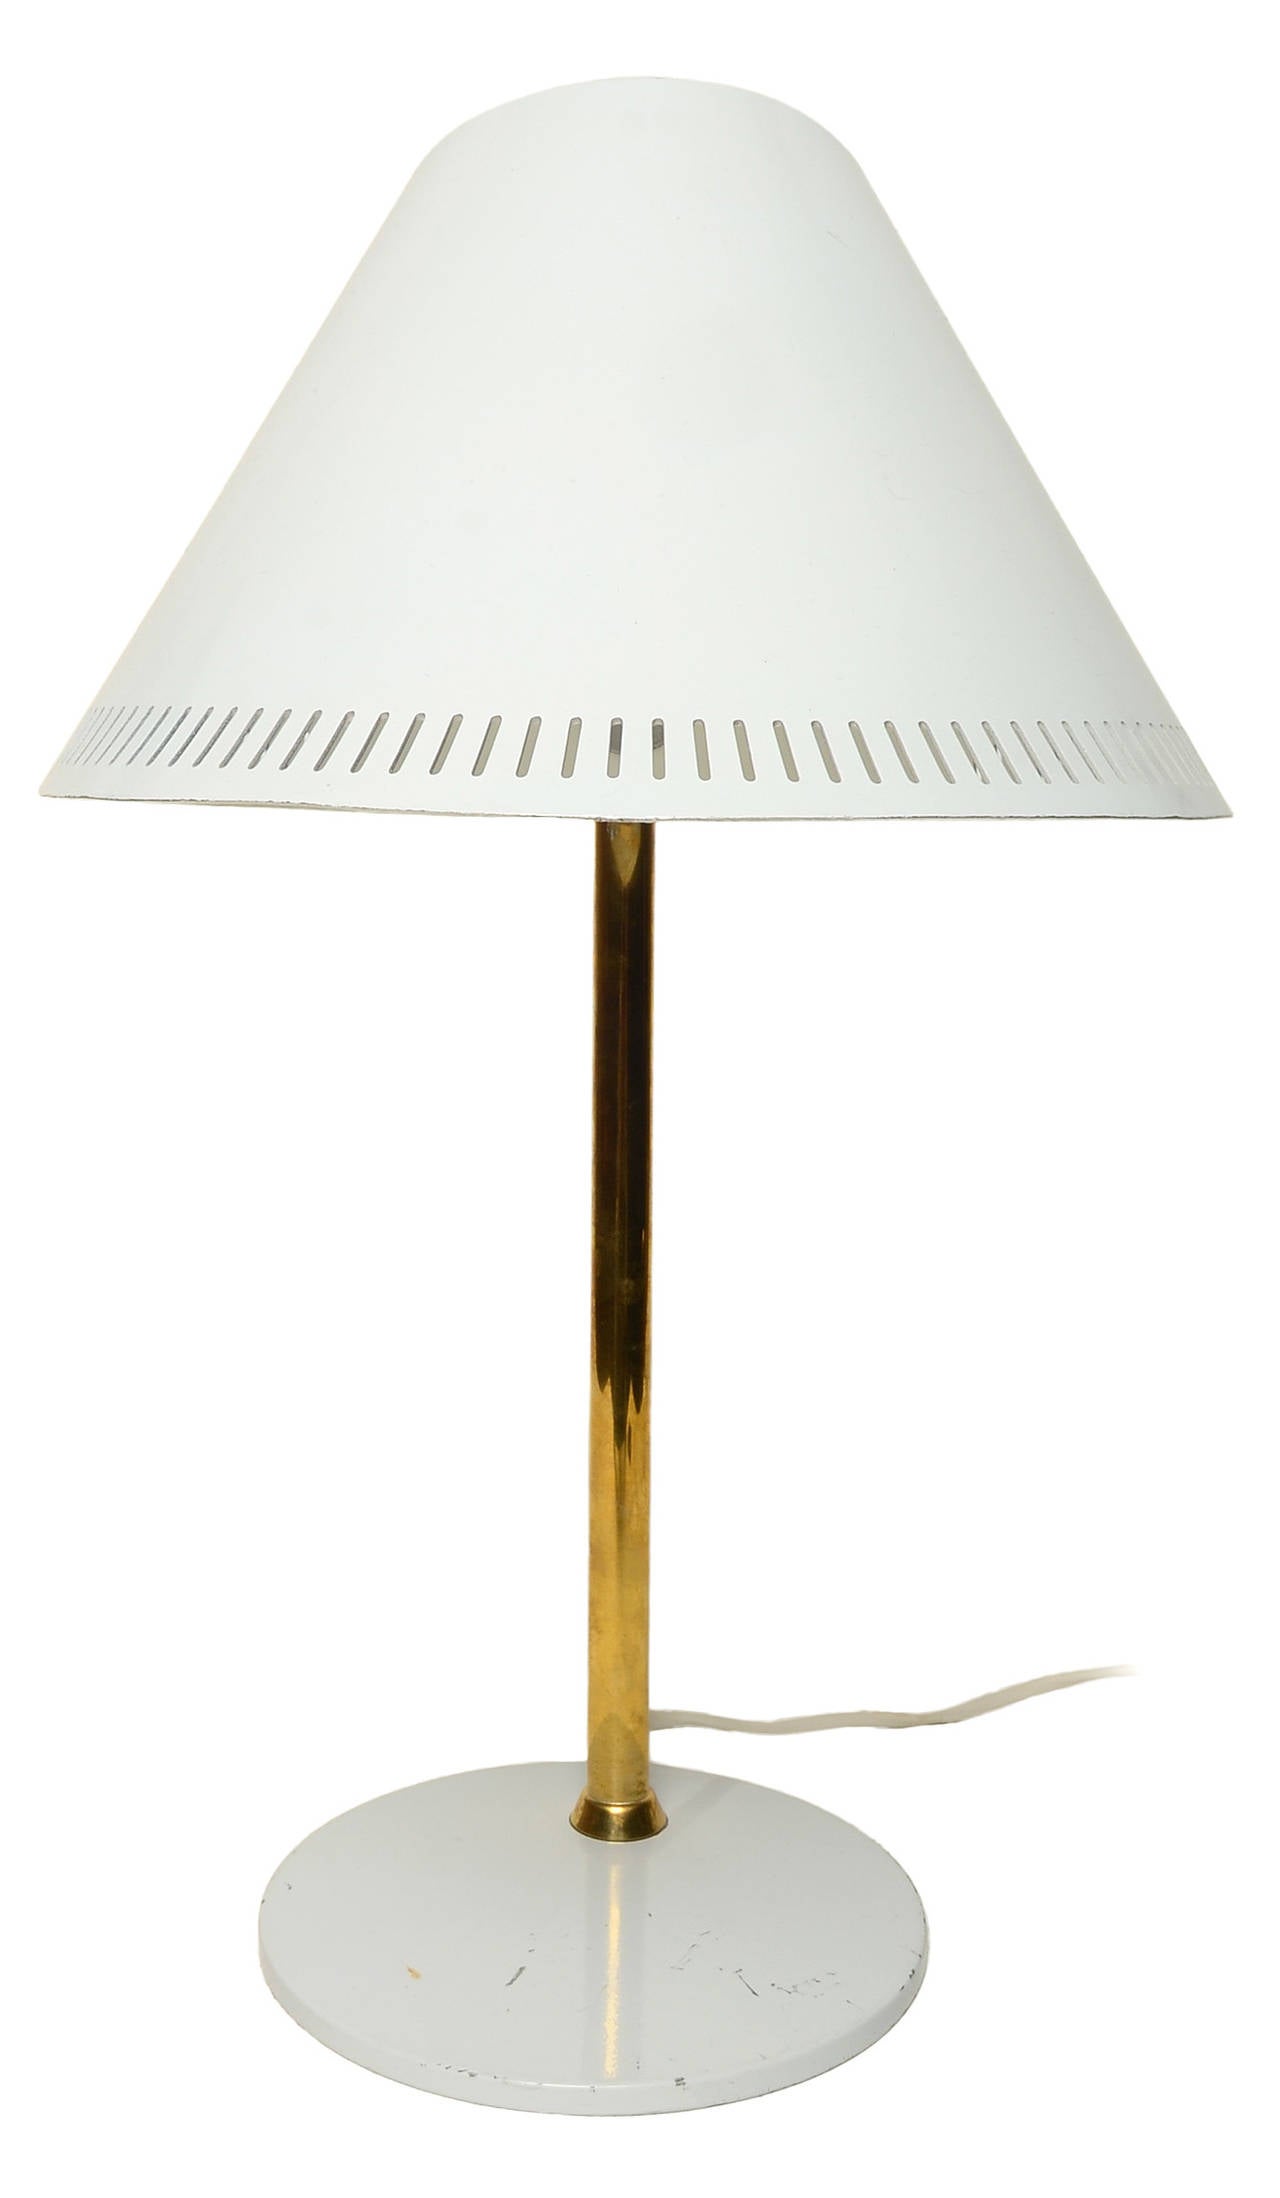 Lampe de table réglable de Paavo Tynell pour Idman, circa1950

Cet exemple conserve son abat-jour blanc émaillé d'origine avec un montant en laiton massif et une vis à pouce réglable.

Estampillé à la base.